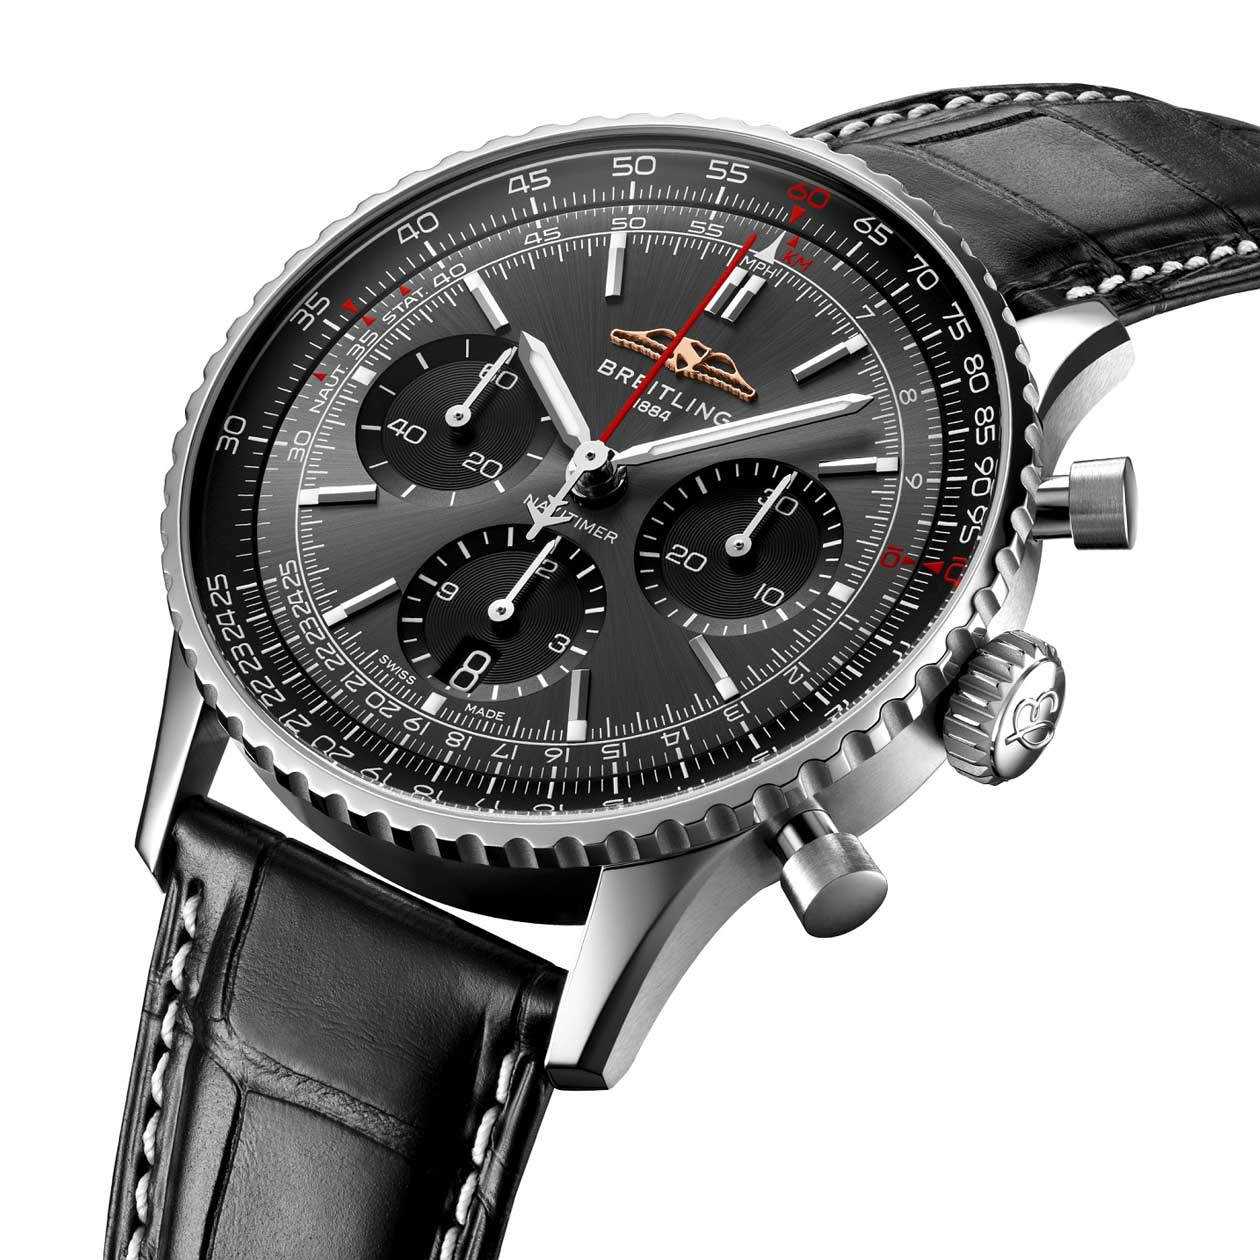 Nuovo orologio Navitimer di Breitling in esclusiva per Swiss